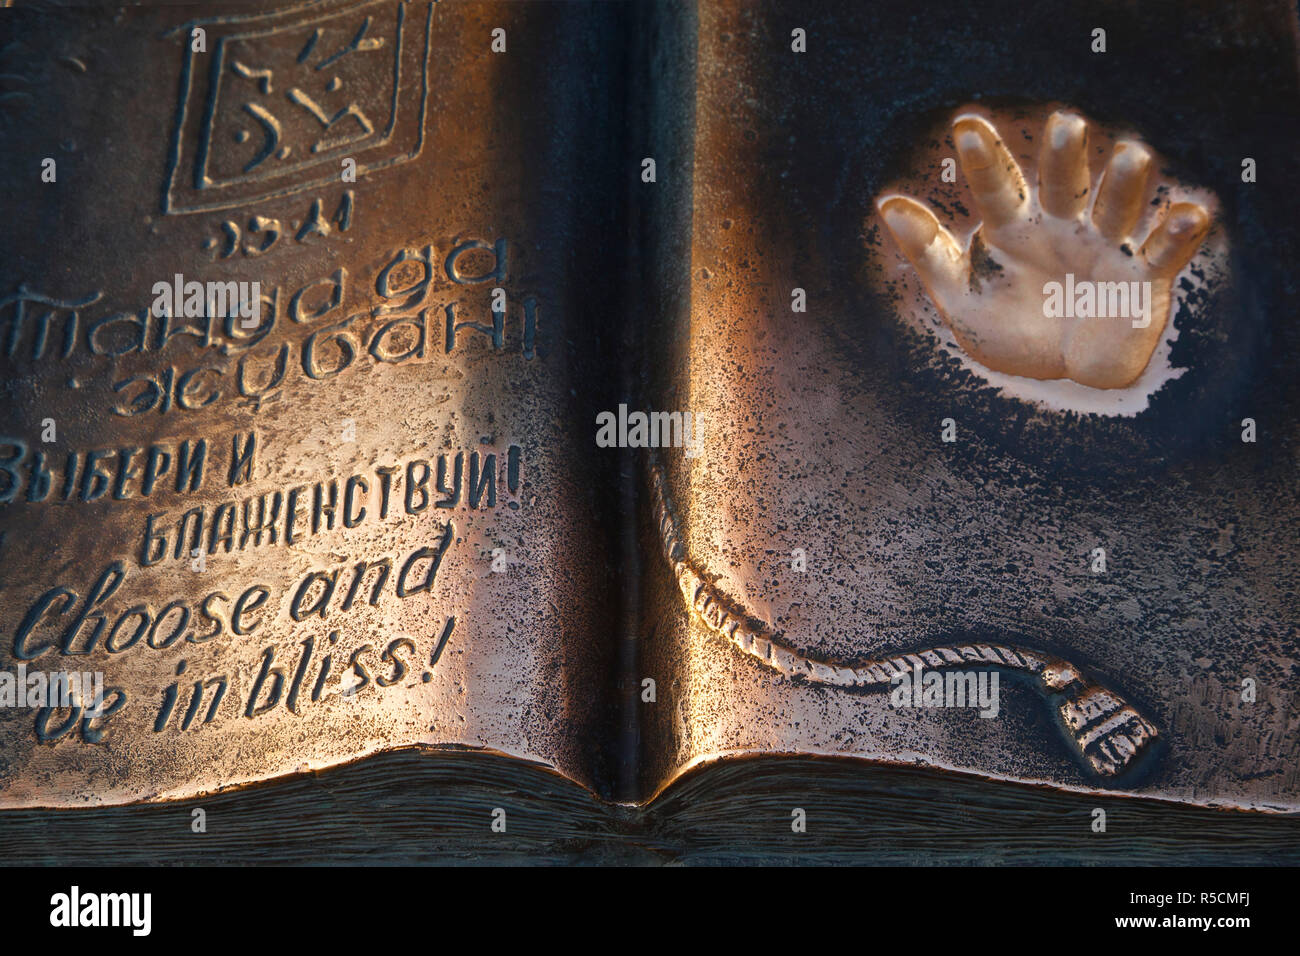 Kazakhstan, Almaty, Respublika Alangy créé soviétique ceremonial chease, Bronze avec livre Nazarbaevâ imprimer la main du Président de la Palm Banque D'Images